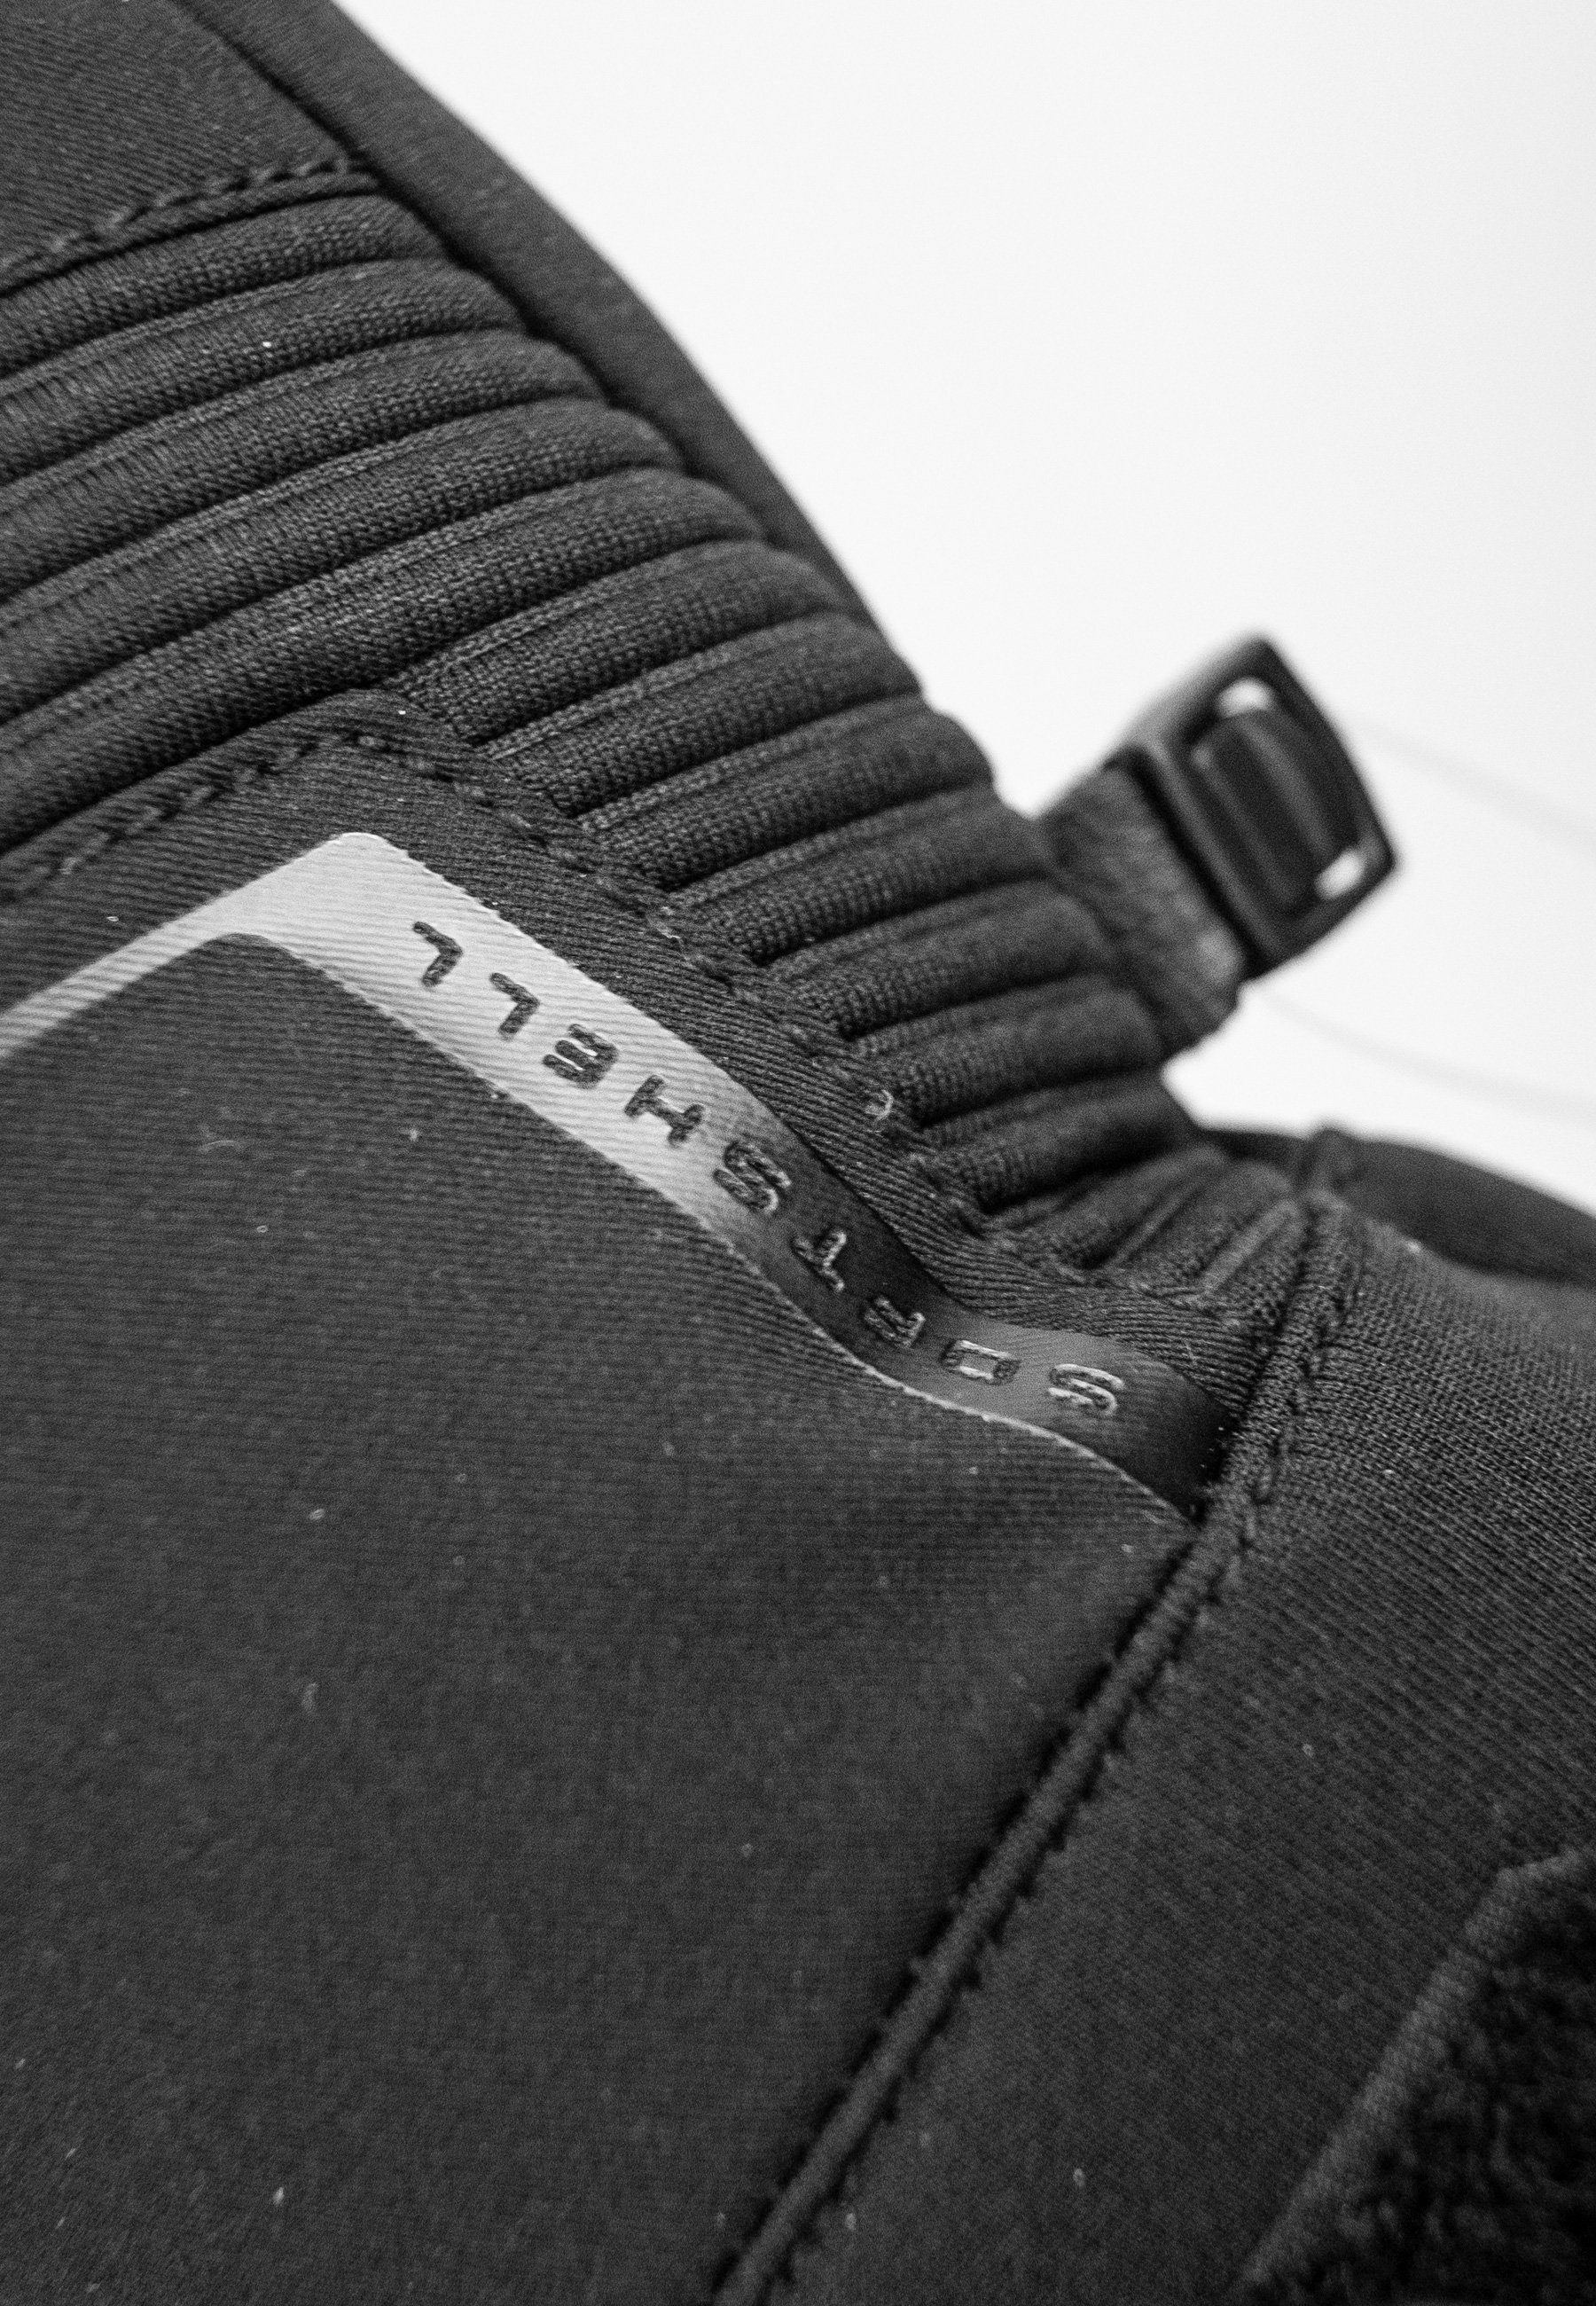 Luca Skihandschuhe schwarz Material R-TEX® aus hochwertigem Reusch XT